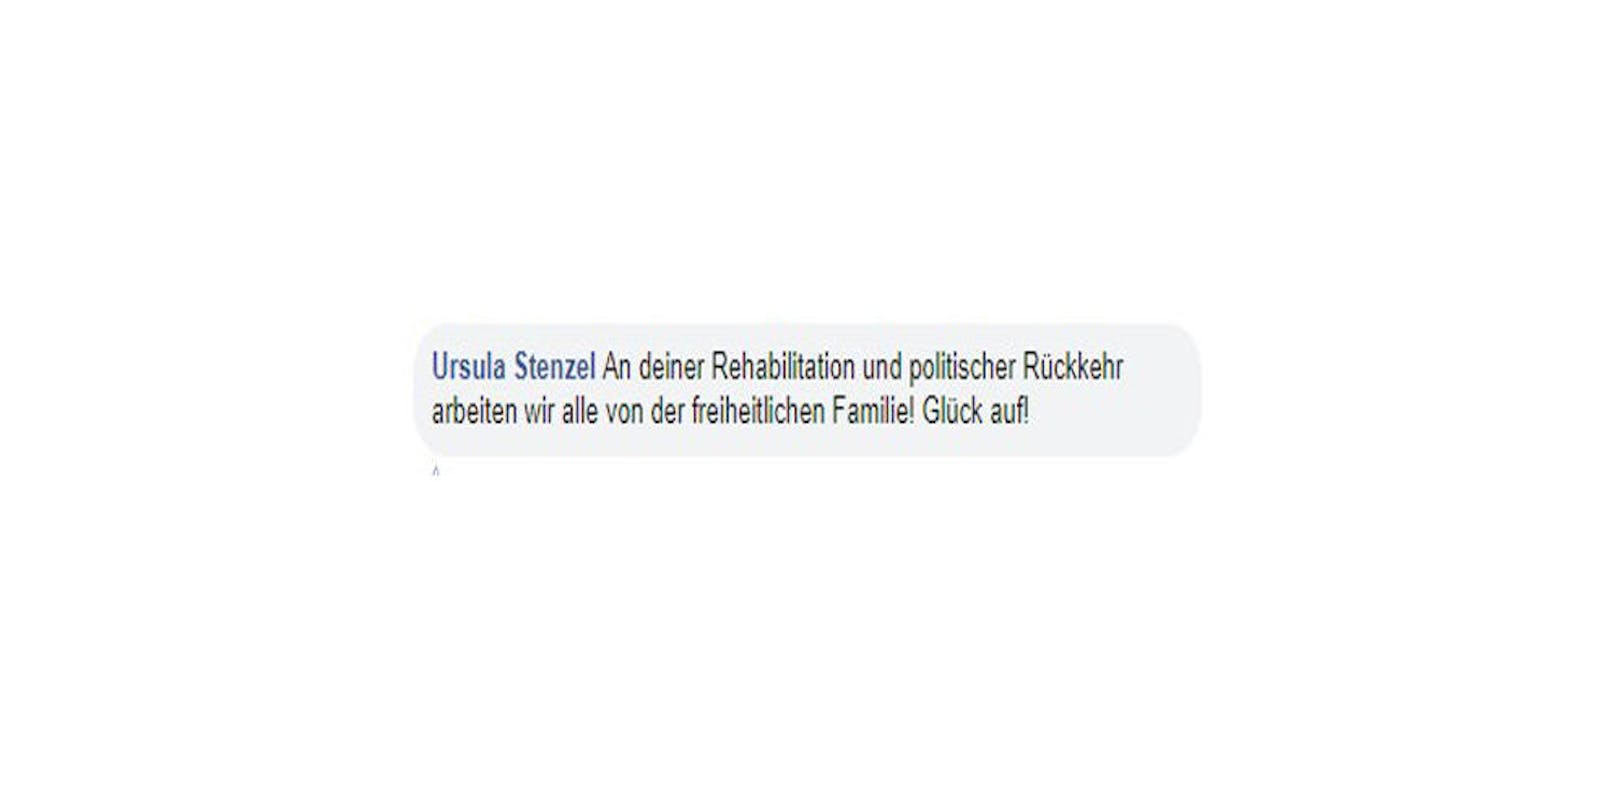 Prominente Fürsprecherin auf Straches privatem Profil: Ursula Stenzel. "An deiner Rehabilitation und politischer Rückkehr arbeiten wir allen von der freiheitlichen Familie! Glück auf!", kommentierte sie.